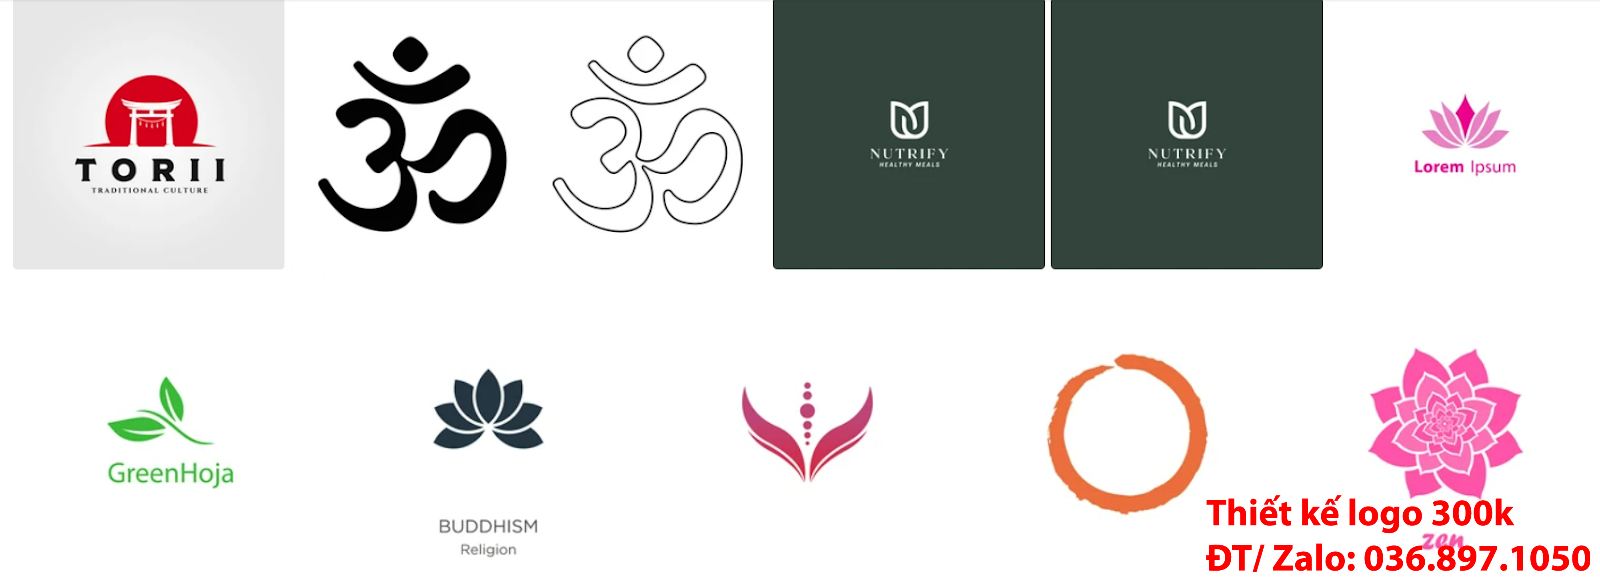 Dịch vụ cung cấp mẫu thiết kế logo phật giáo đẹp nhất hiện nay tại Hà Nội